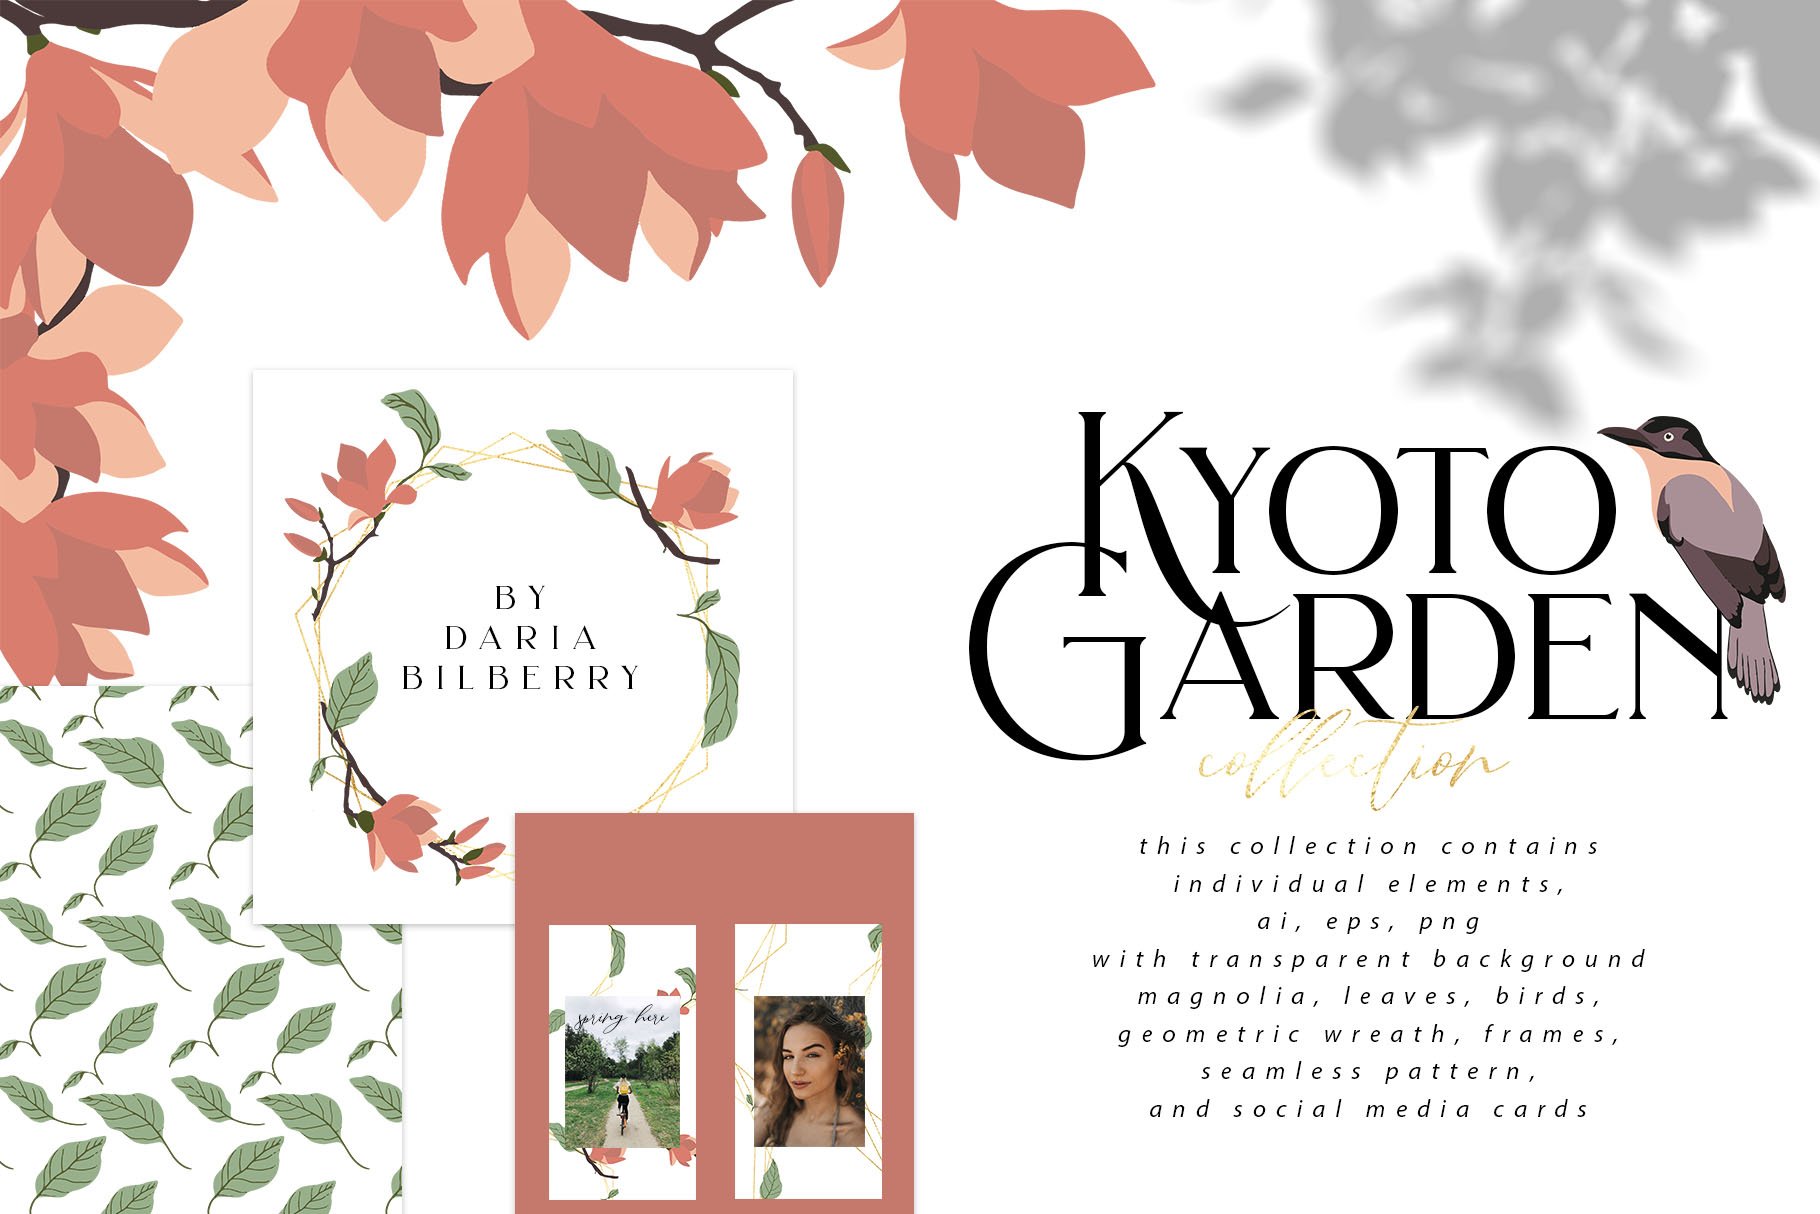 Kyoto Garden Collection